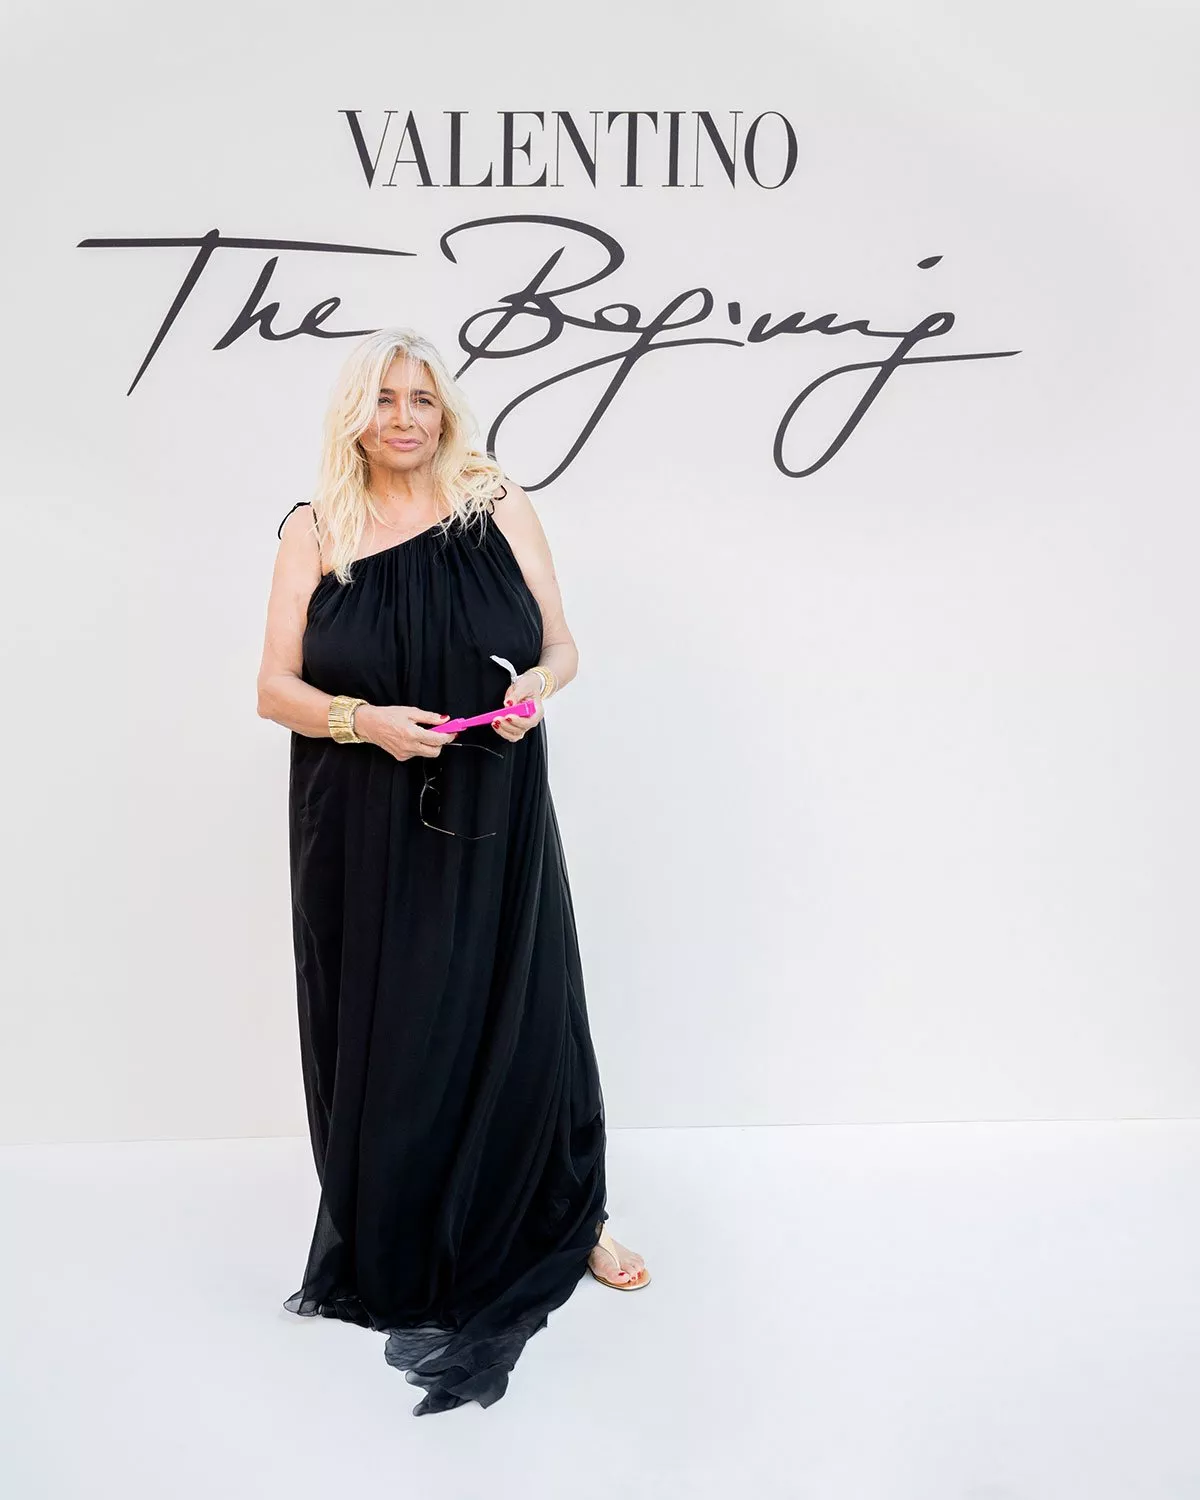 مجموعة Valentino للخياطة الراقية لخريف وشتاء 2022-2023: تشكيلة تعود إلى الجذور